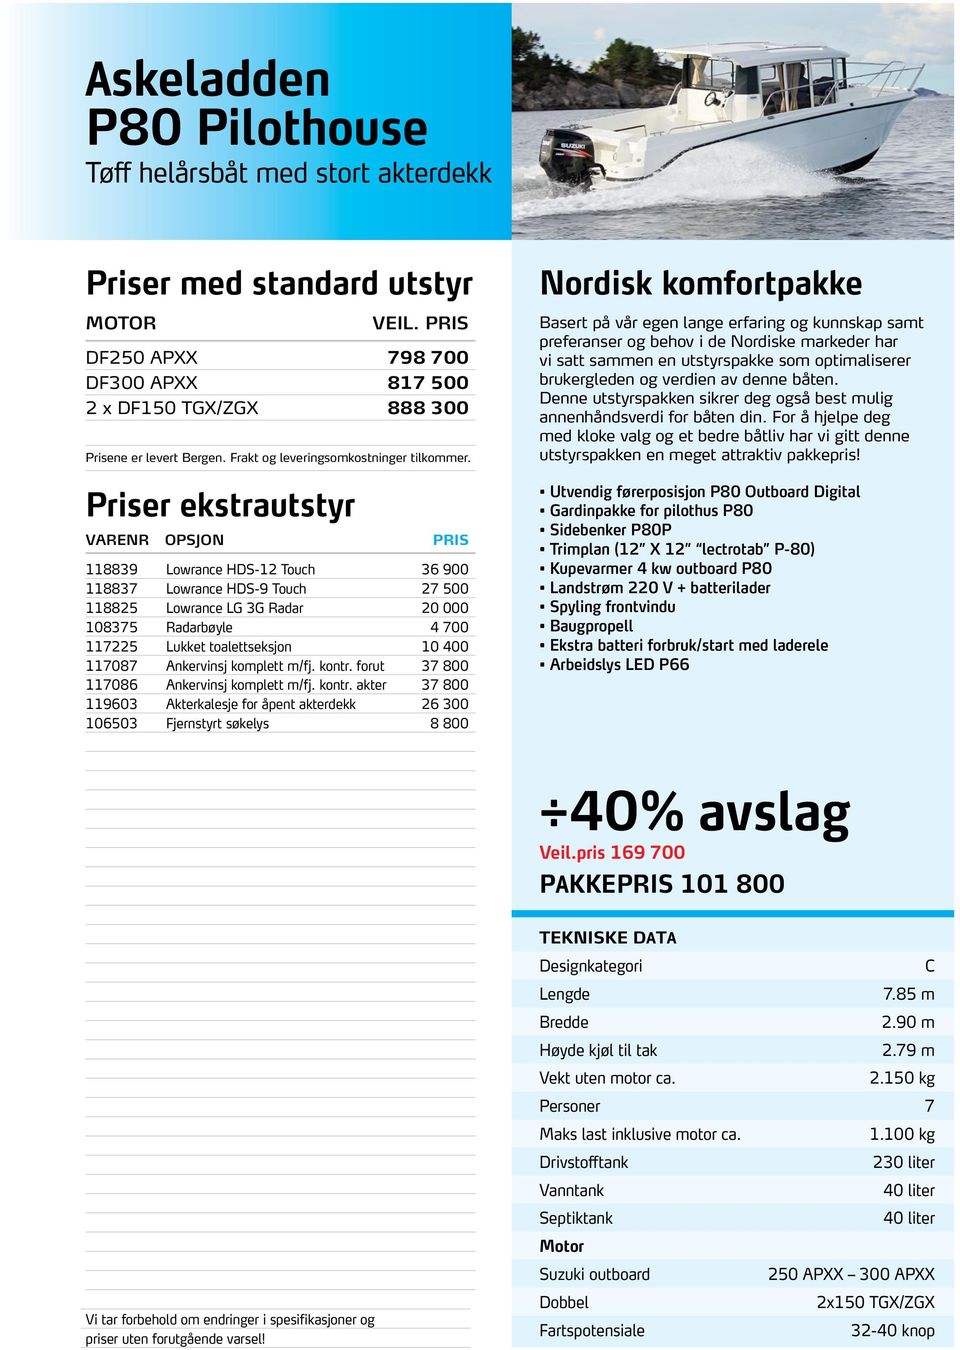 Nordisk komfortpakke Basert på vår egen lange erfaring og kunnskap samt preferanser og behov i de Nordiske markeder har vi satt sammen en utstyrspakke som optimaliserer brukergleden og verdien av